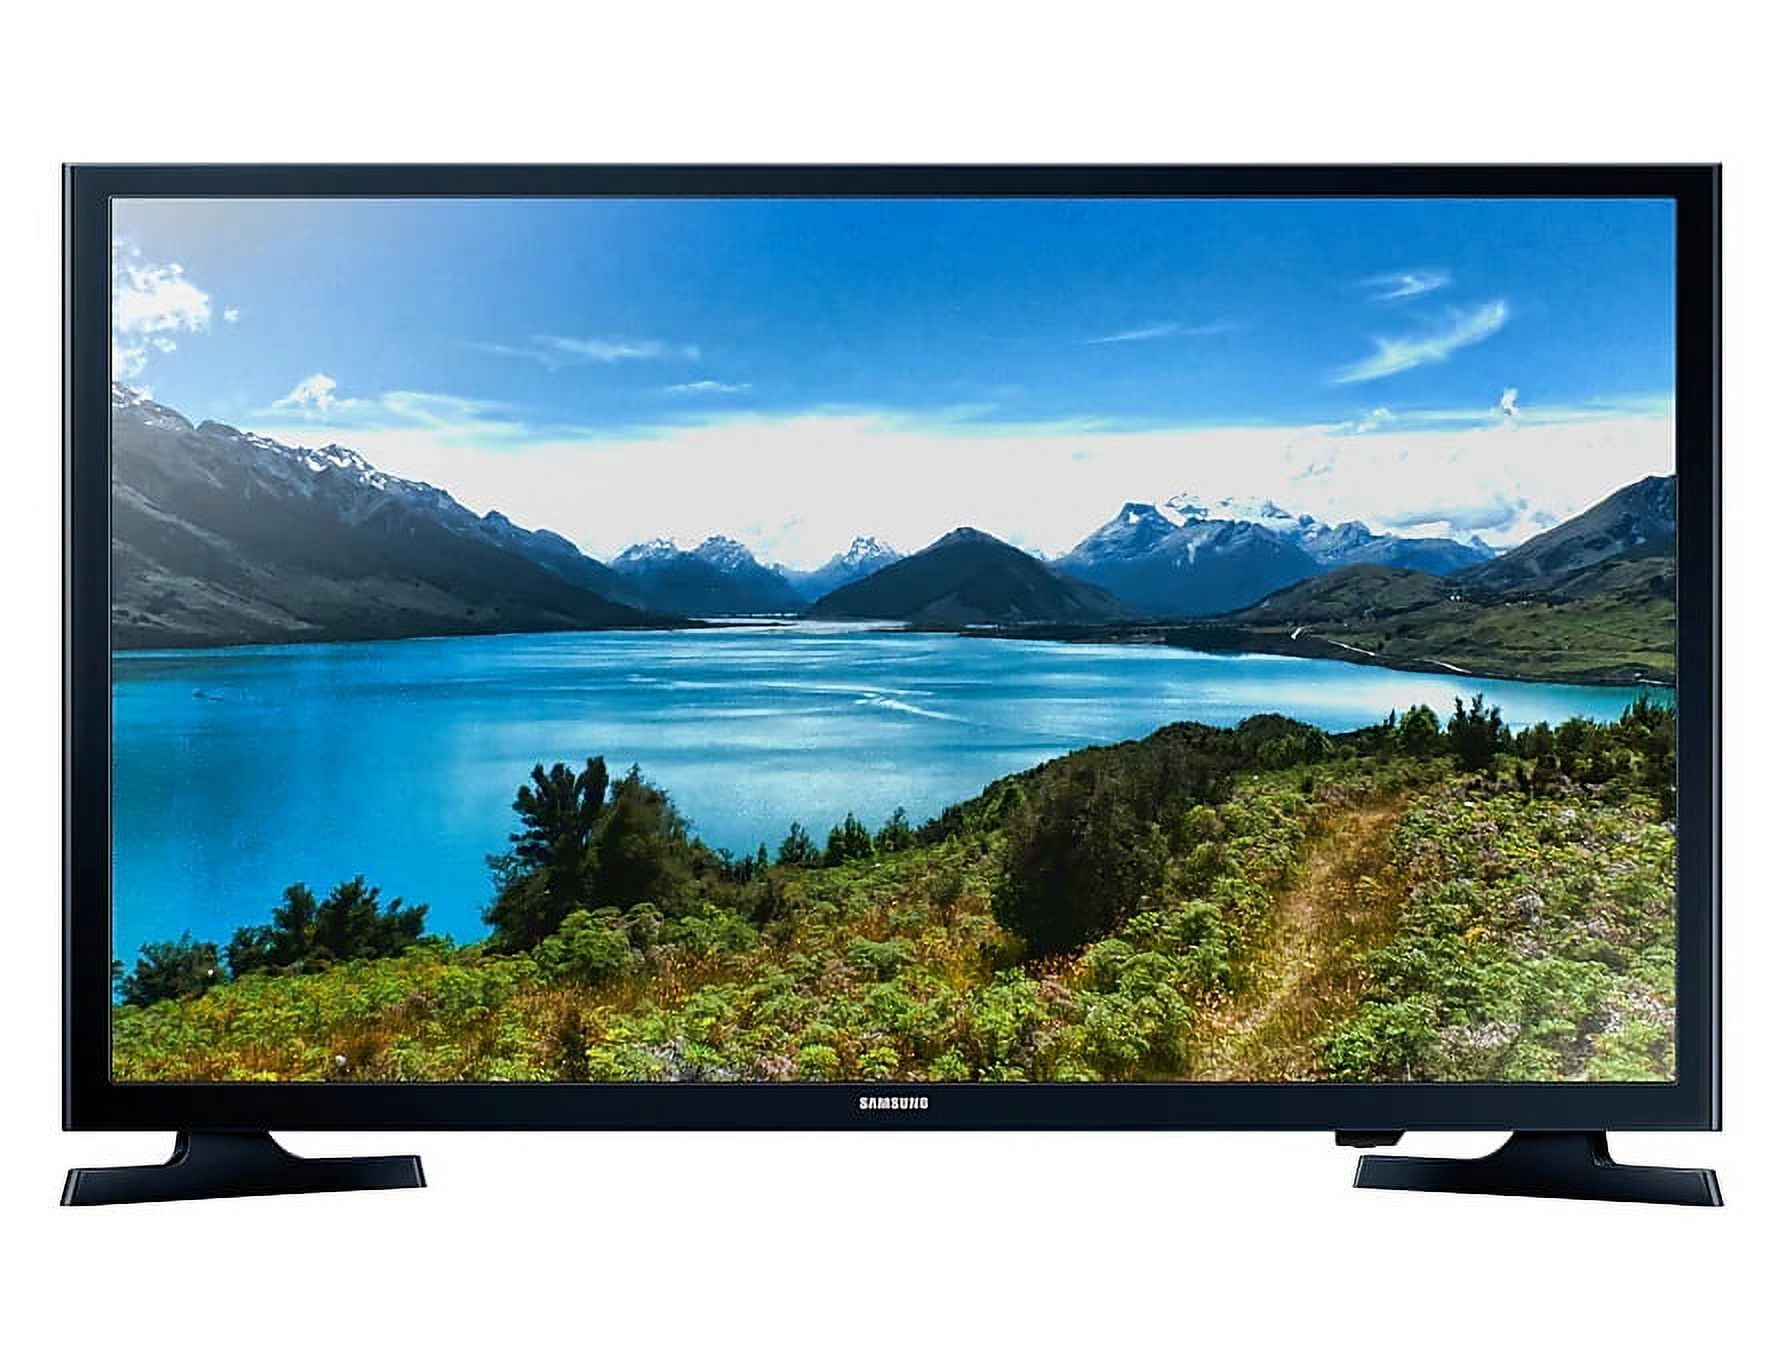 SAMSUNG TV LED 32 UE32T5302 Full HD Smart TV WiFi DVB-T2